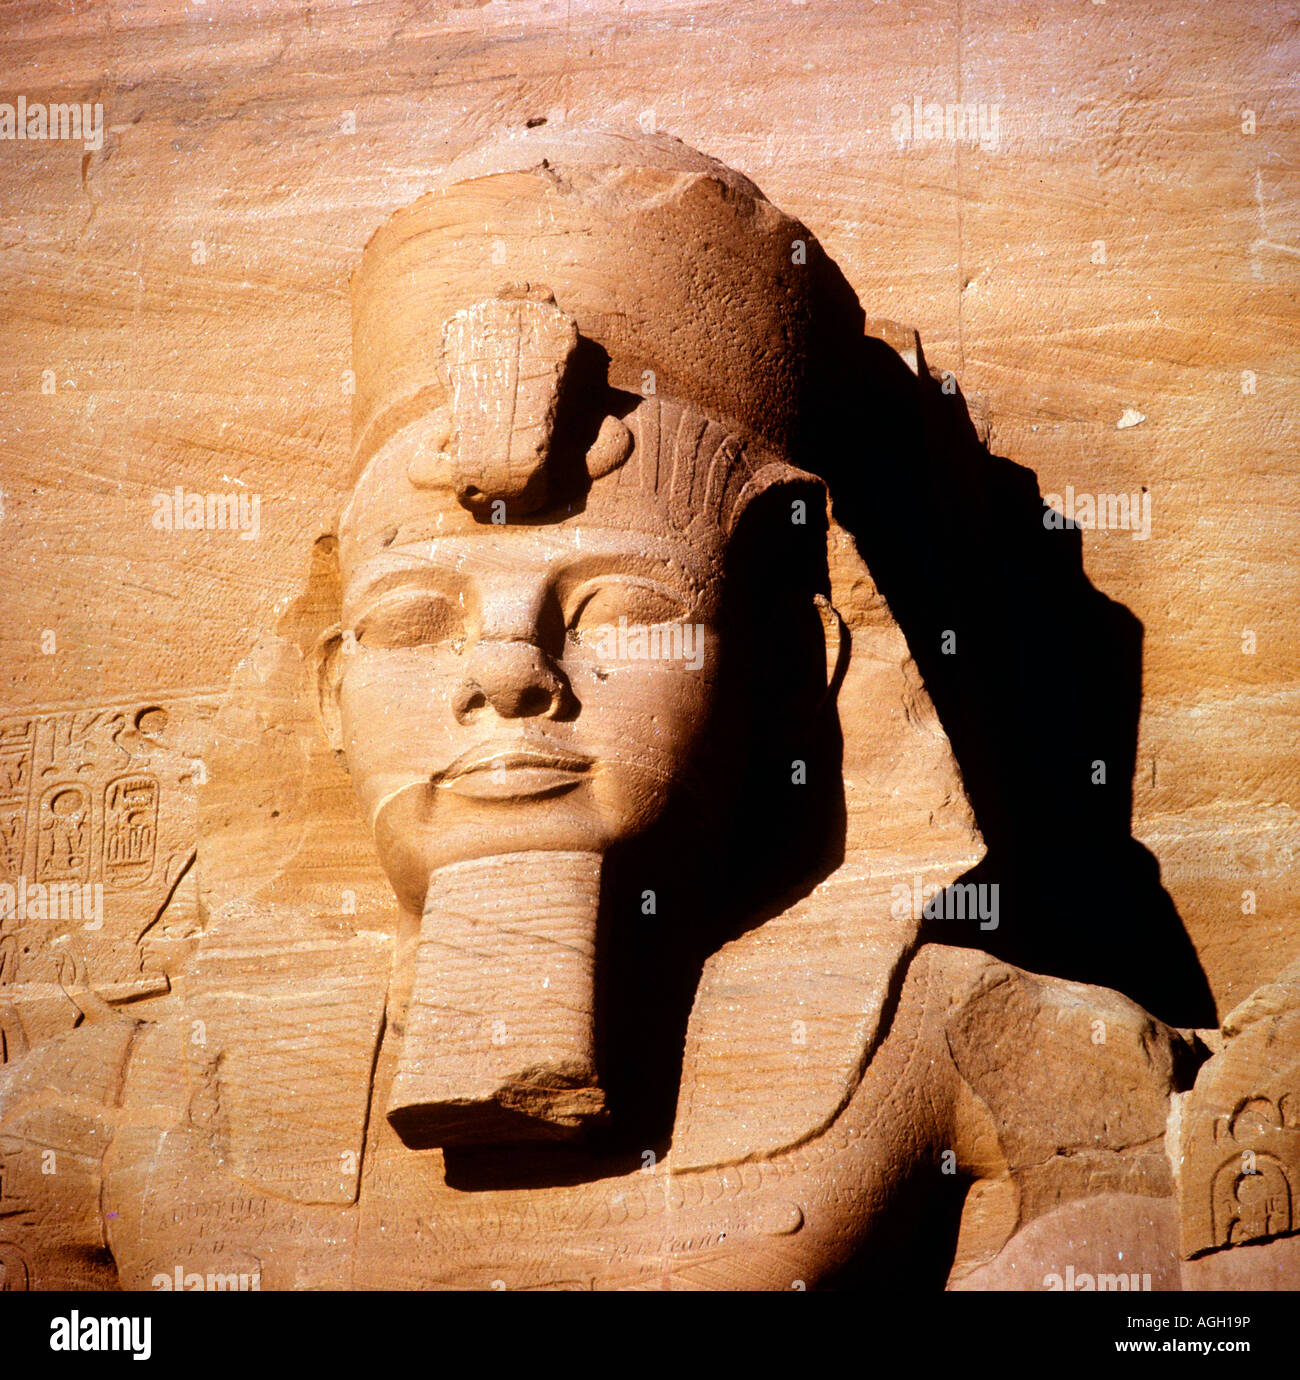 Rameses II desde el templo de Abu Simbel. El antiguo Egipto. Foto de stock